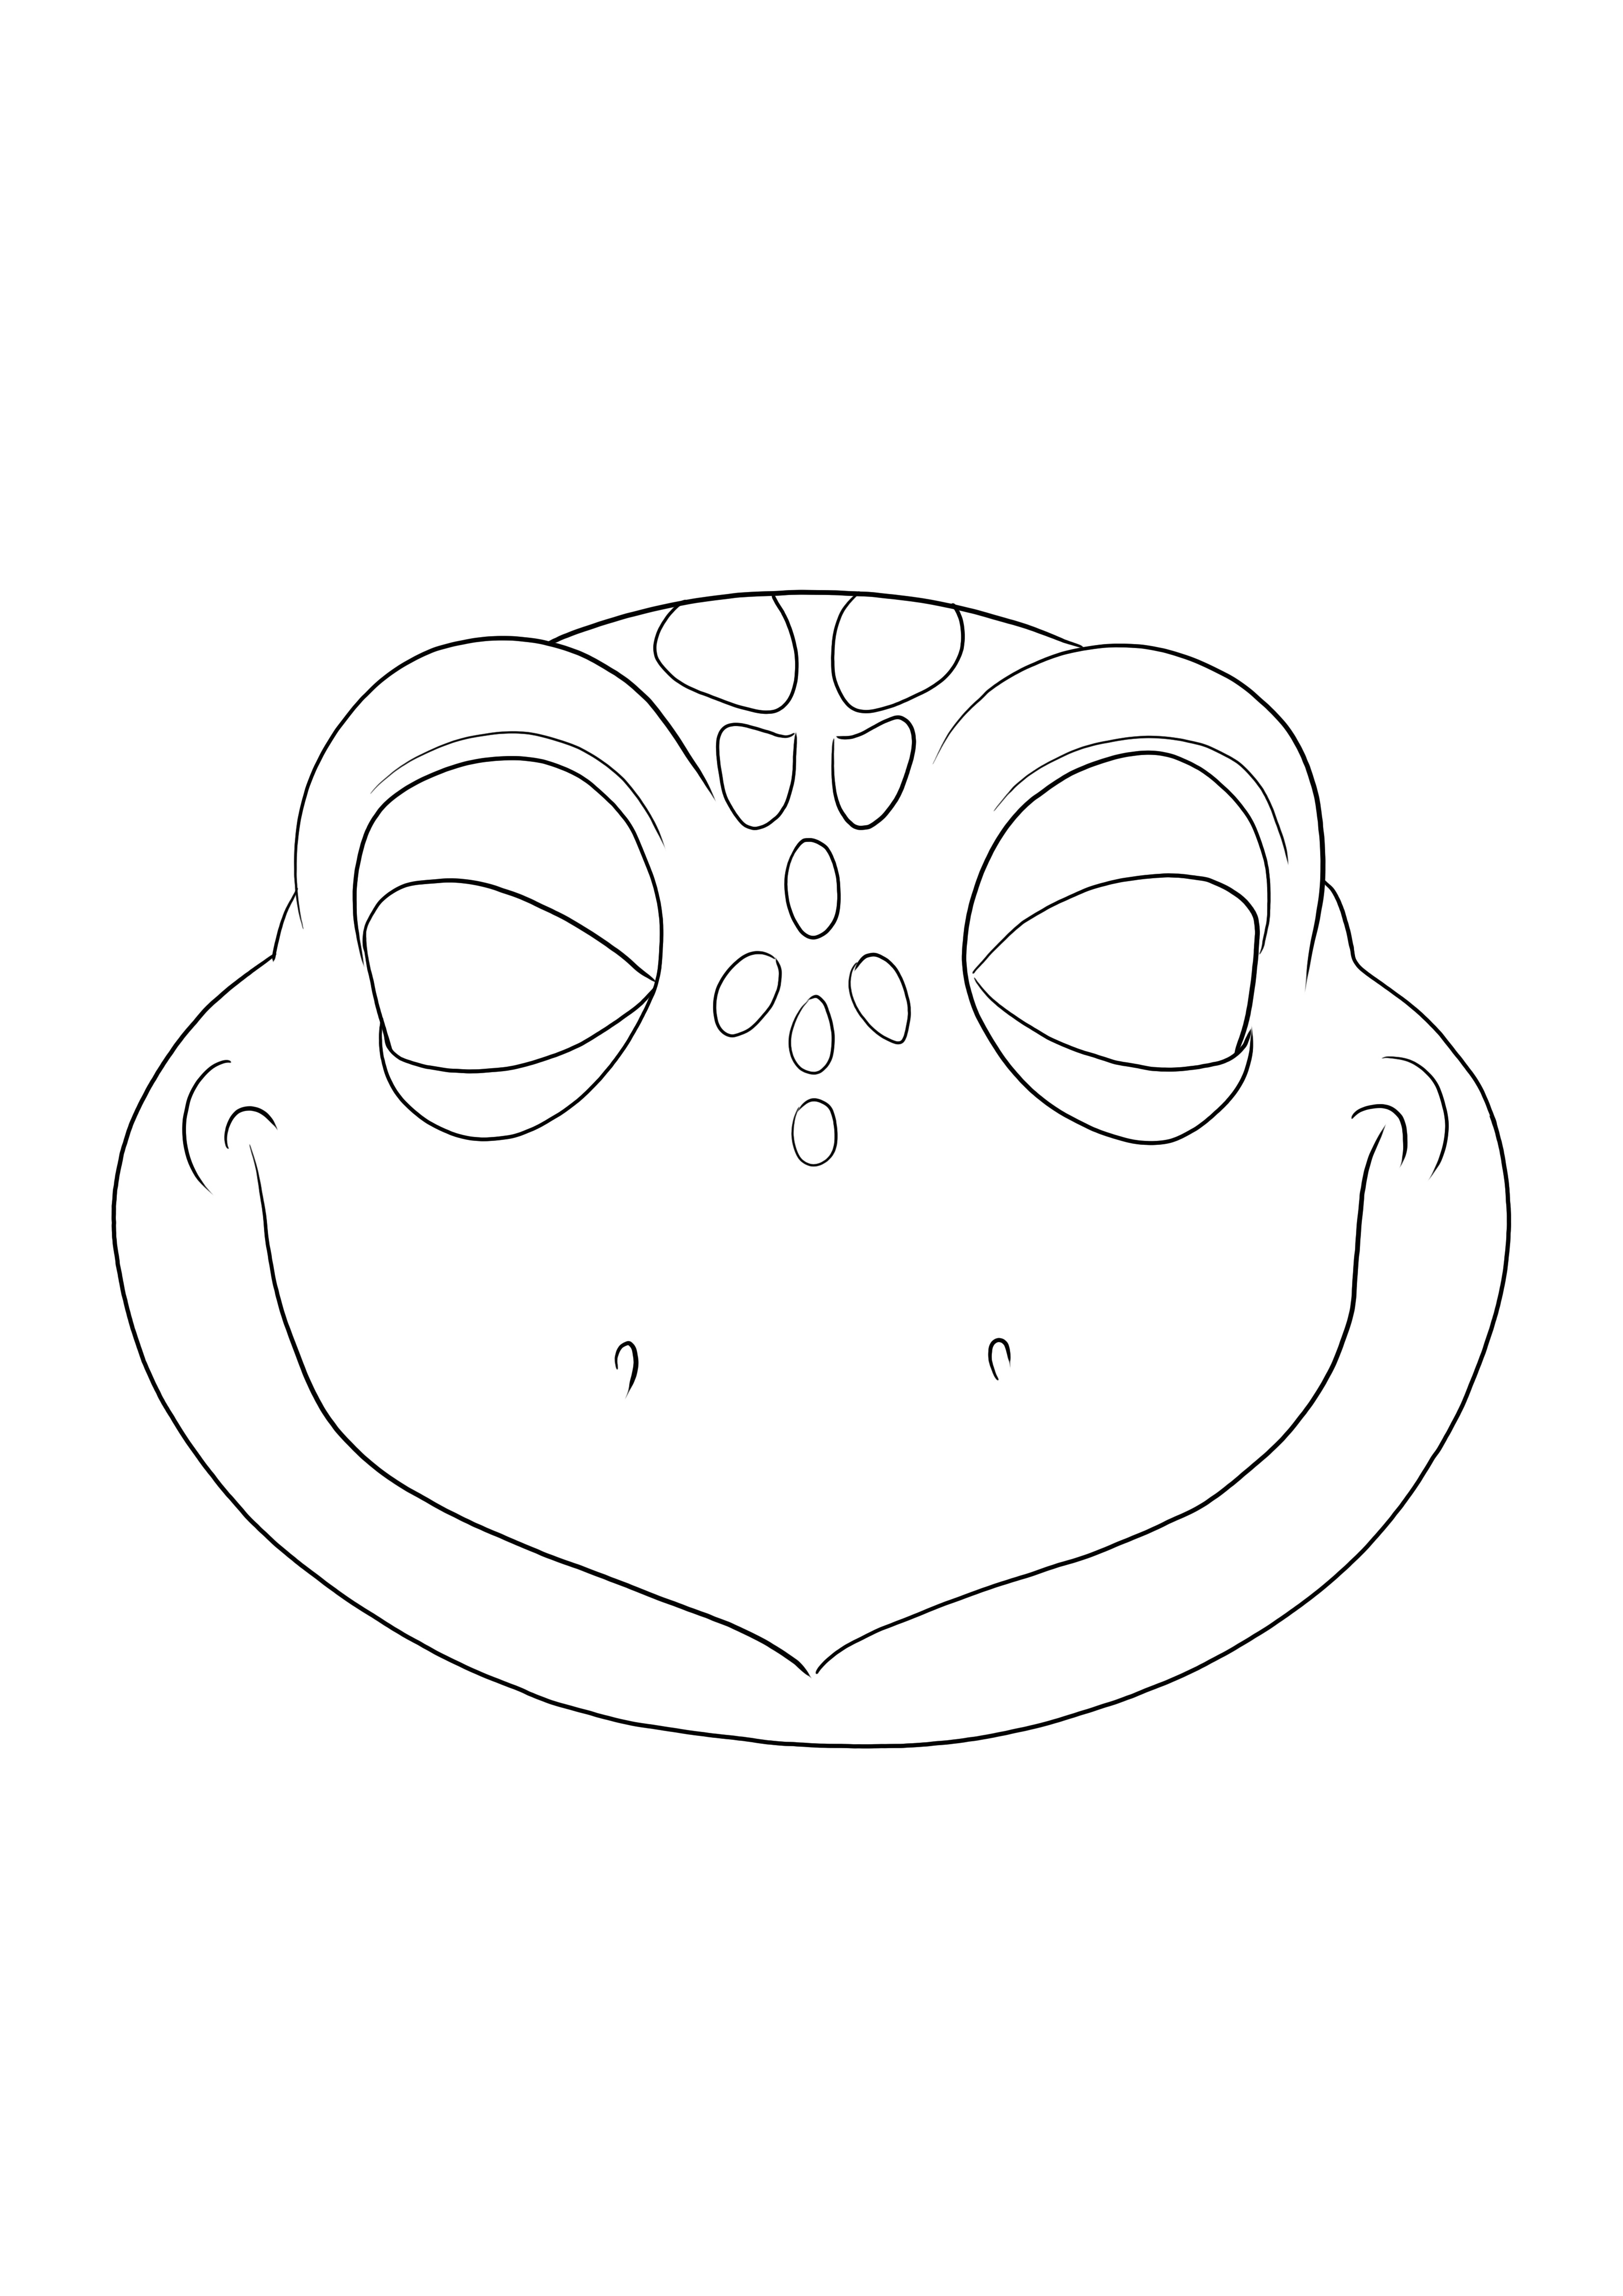 Semplice foglio da colorare di una maschera di tartaruga da stampare o scaricare gratuitamente